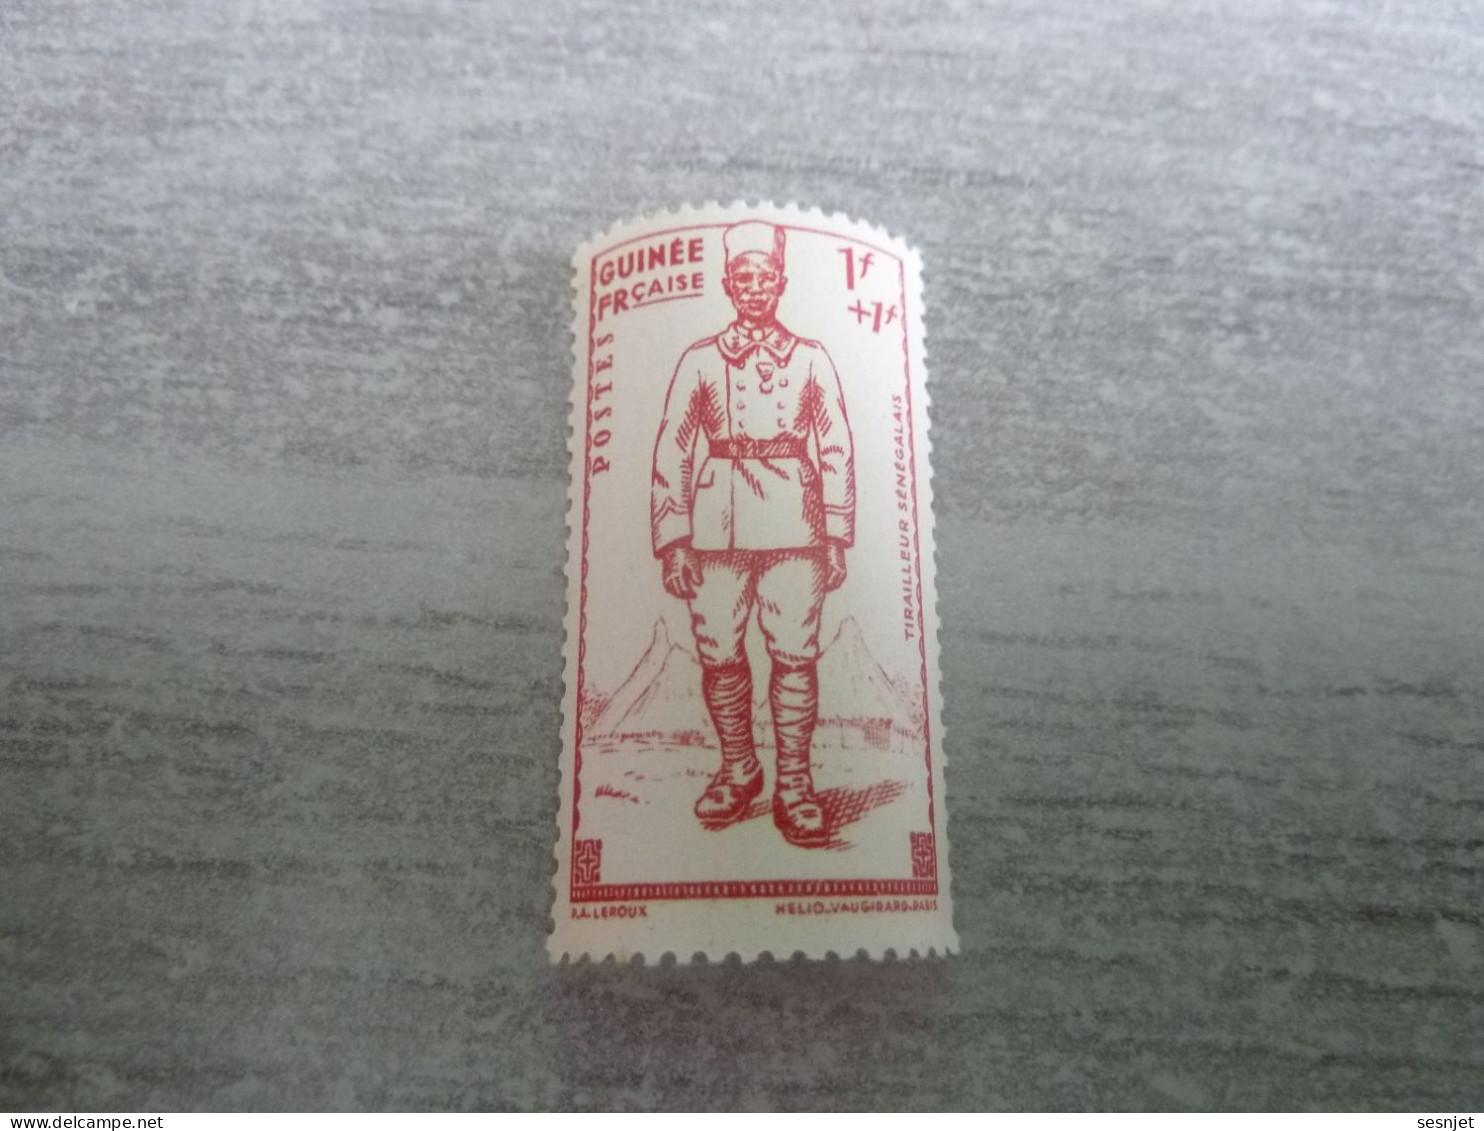 Guinée Française - Tirailleur Sénégalais - 1f.+1f. - Helio Vaugirard Paris - Rouge-orange - Neuf - Année 1941 - - Unused Stamps